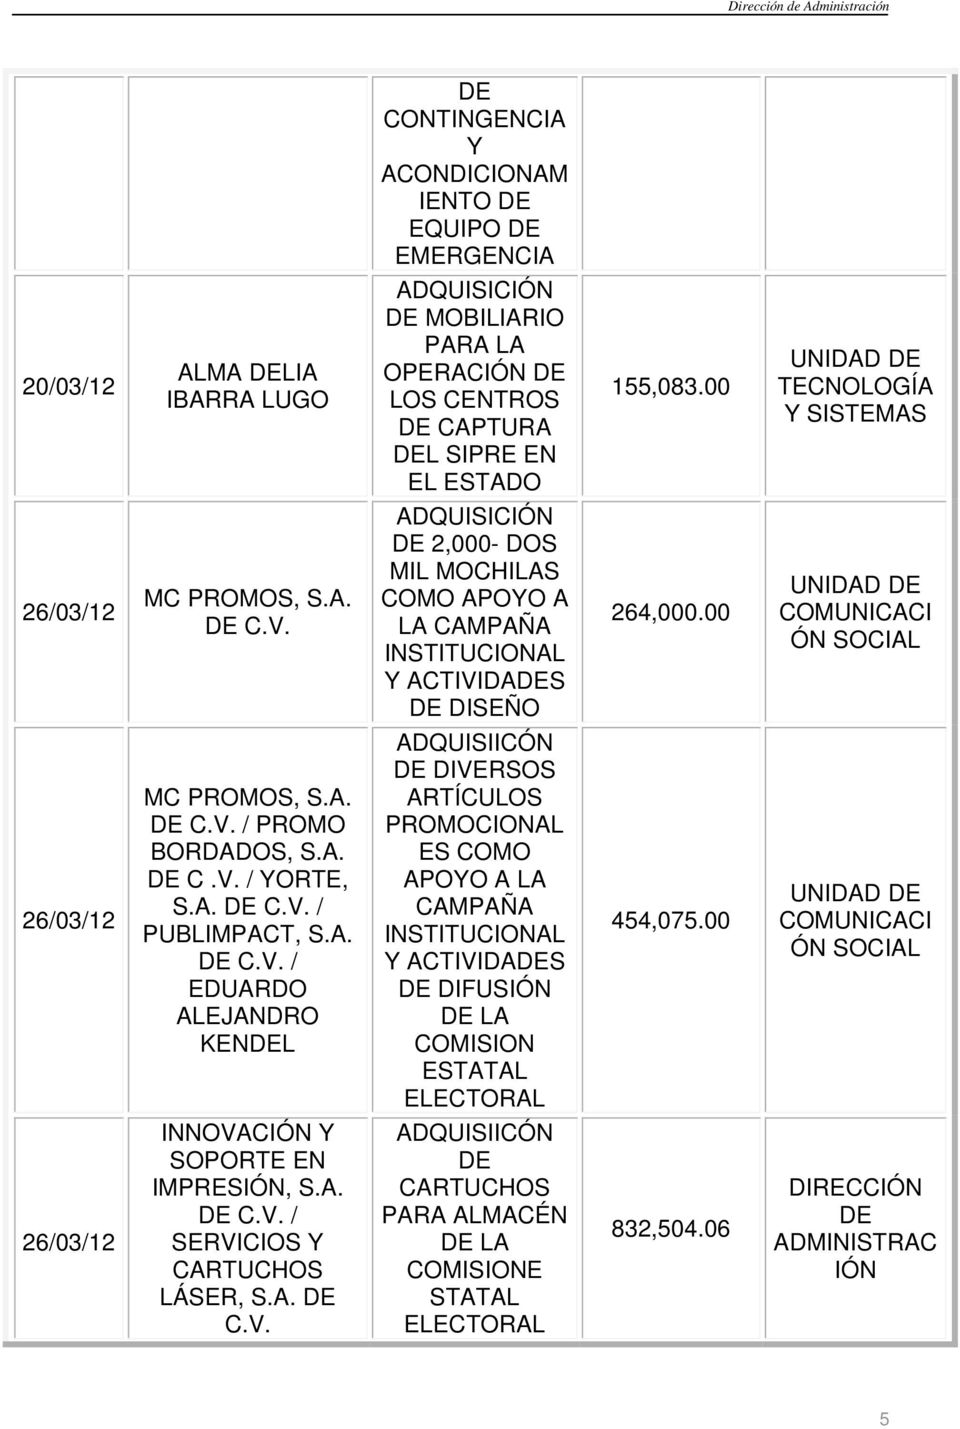 00 UNIDAD COMUNICACI ÓN SOCIAL MC PROMOS, S.A. / PROMO BORDADOS, S.A. C.V. / YORTE, S.A. / PUBLIMPACT, S.A. / EDUARDO ALEJANDRO KENL ADQUISIICÓN DIVERSOS ARTÍCULOS PROMOCIONAL ES COMO APOYO A LA CAMPAÑA INSTITUCIONAL Y ACTIVIDAS DIFUS LA COMISION 454,075.